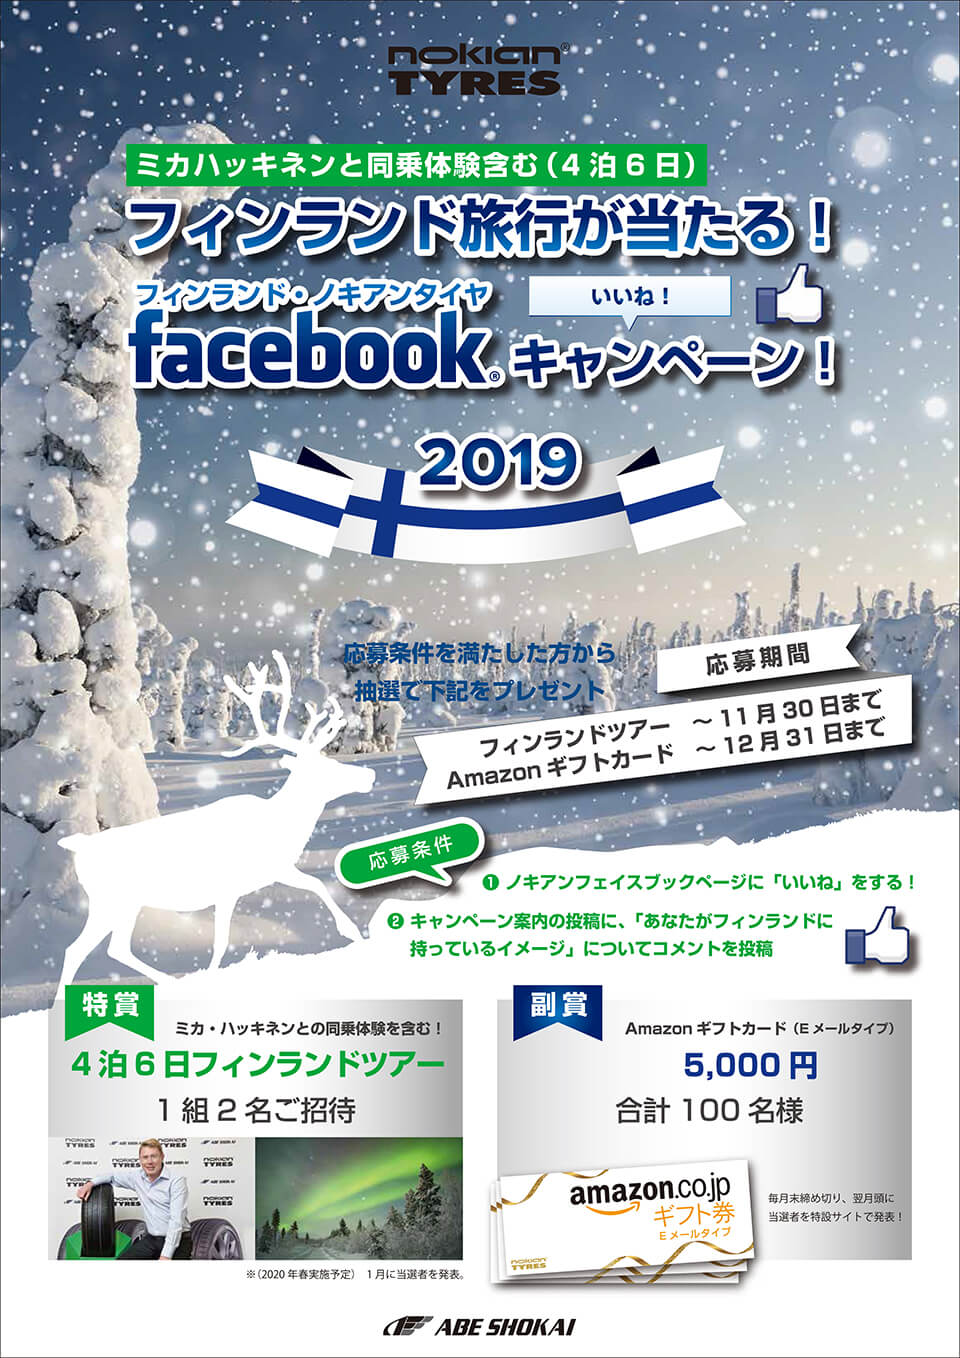 ノキアンタイヤfacebookキャンペーン2019 阿部商会